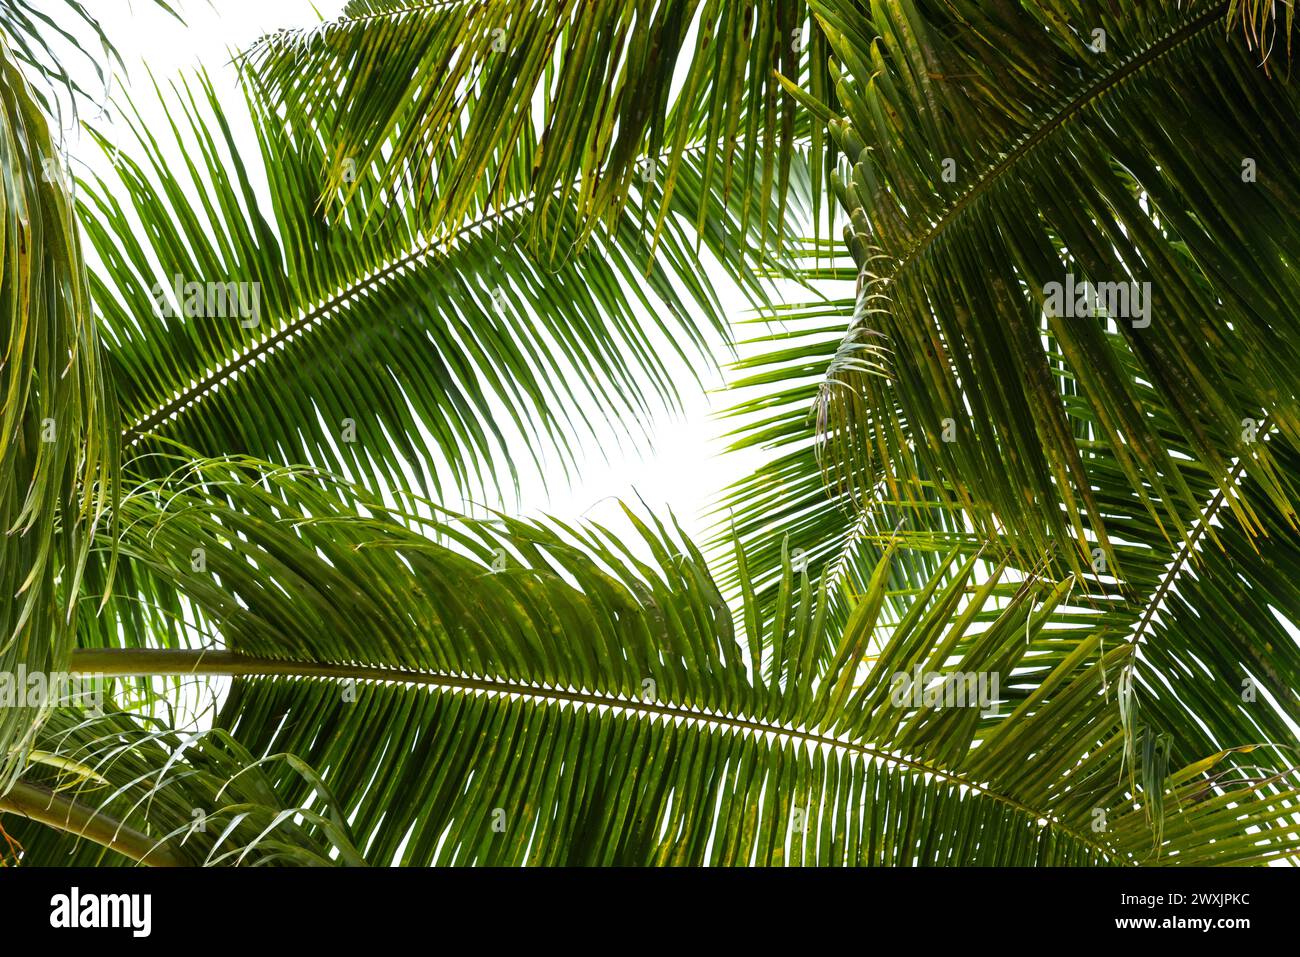 Photo de fond tropique, feuilles de palmier vertes sous un ciel lumineux par une journée ensoleillée Banque D'Images